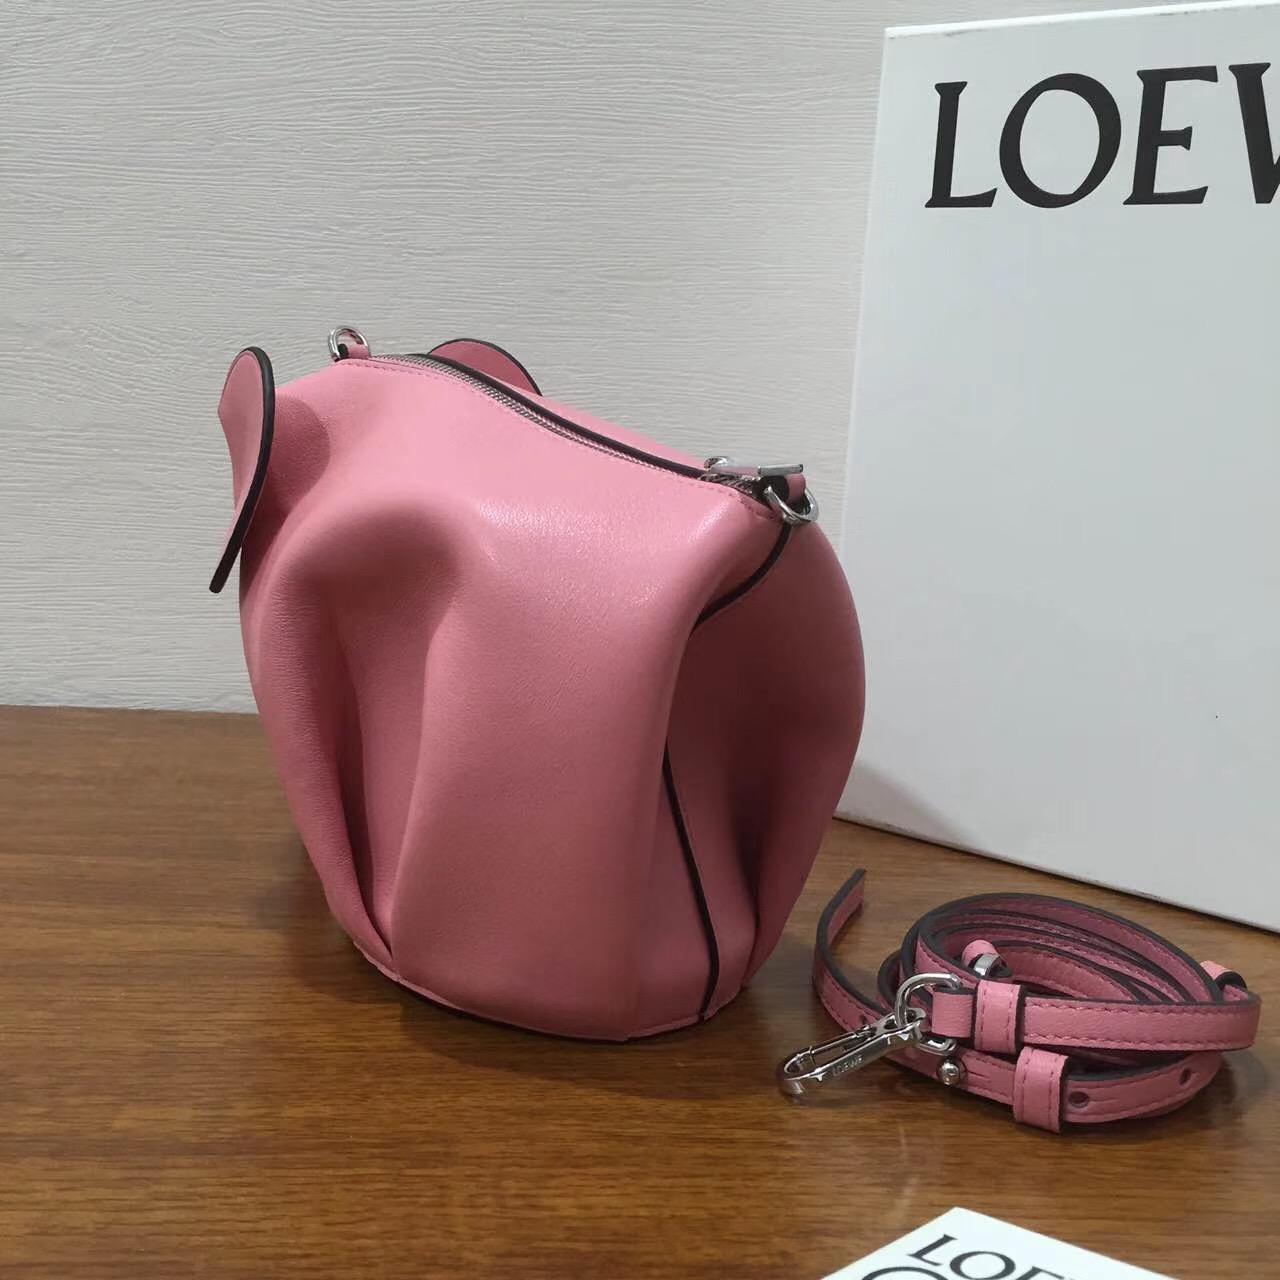 Loewe Elephant Mini Bag 糖果色 粉色 小牛皮 大象造型迷你手袋